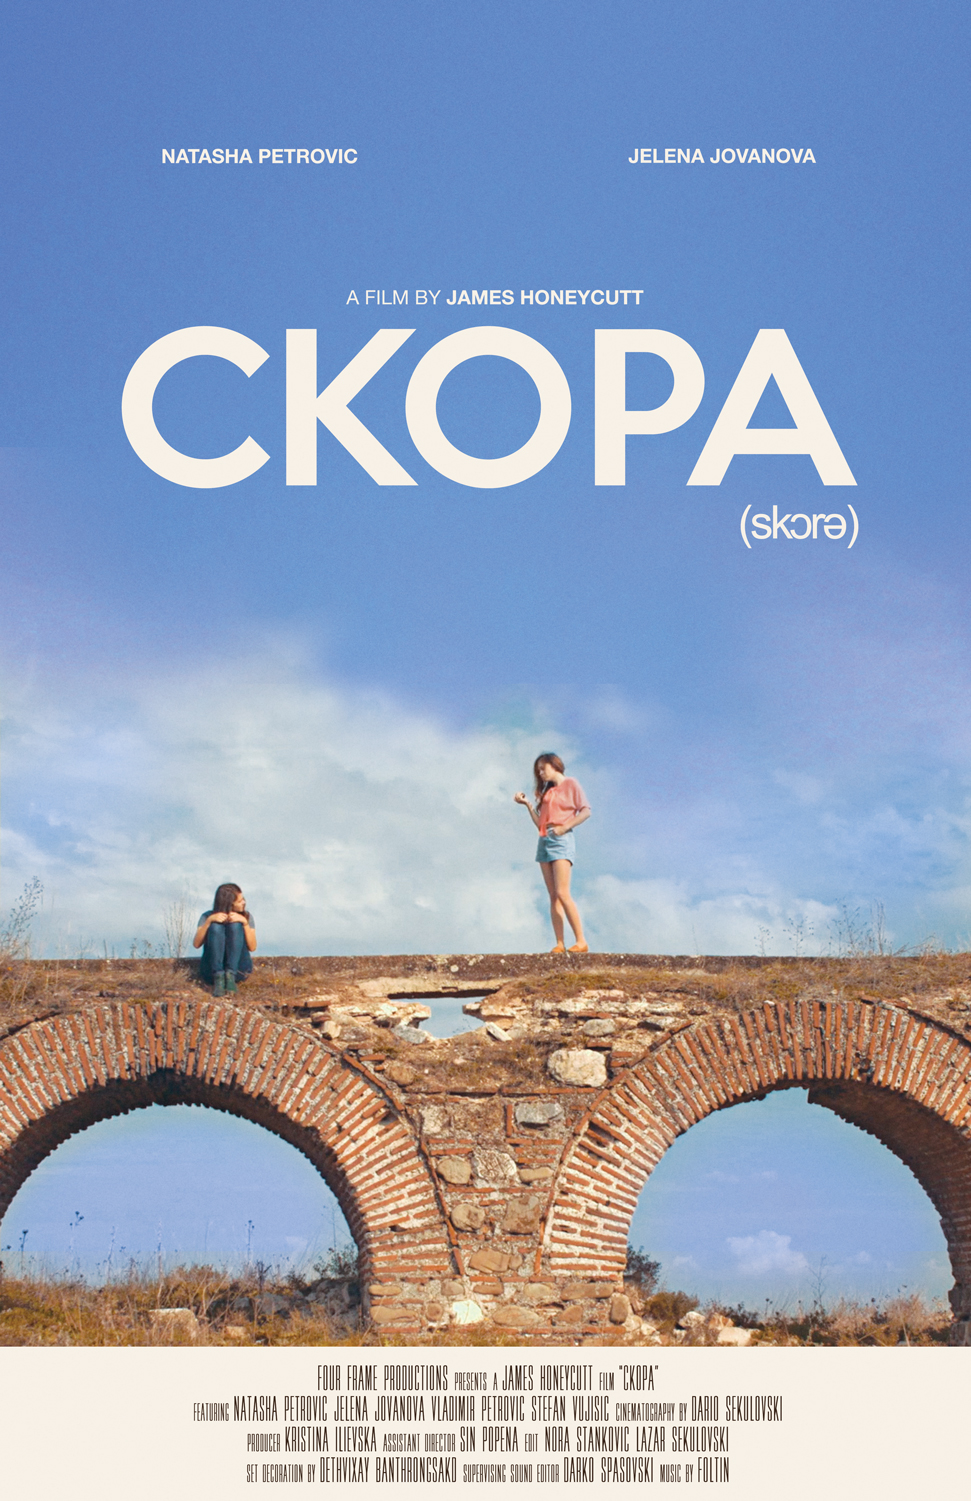 Ckopa movie poster poster graphic design  indie film movie